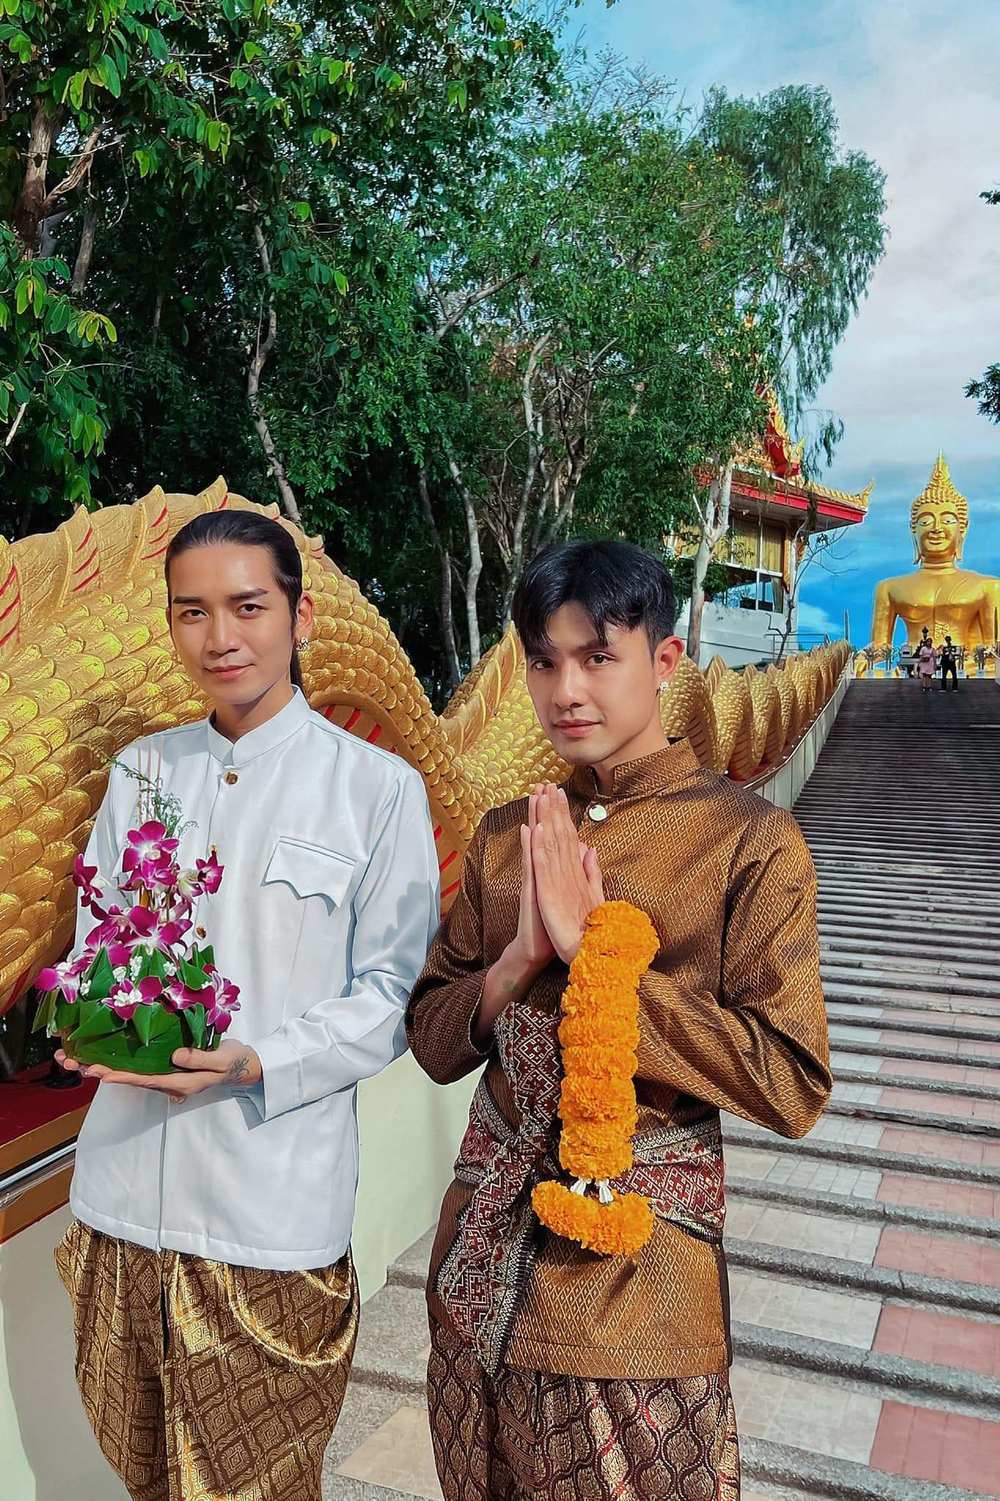  
Quang Lâm - BB Trần thường xuyên có những chuyến du lịch cùng nhau để hâm nóng tình cảm. (Ảnh: Facebook Trần Bảo Bảo)